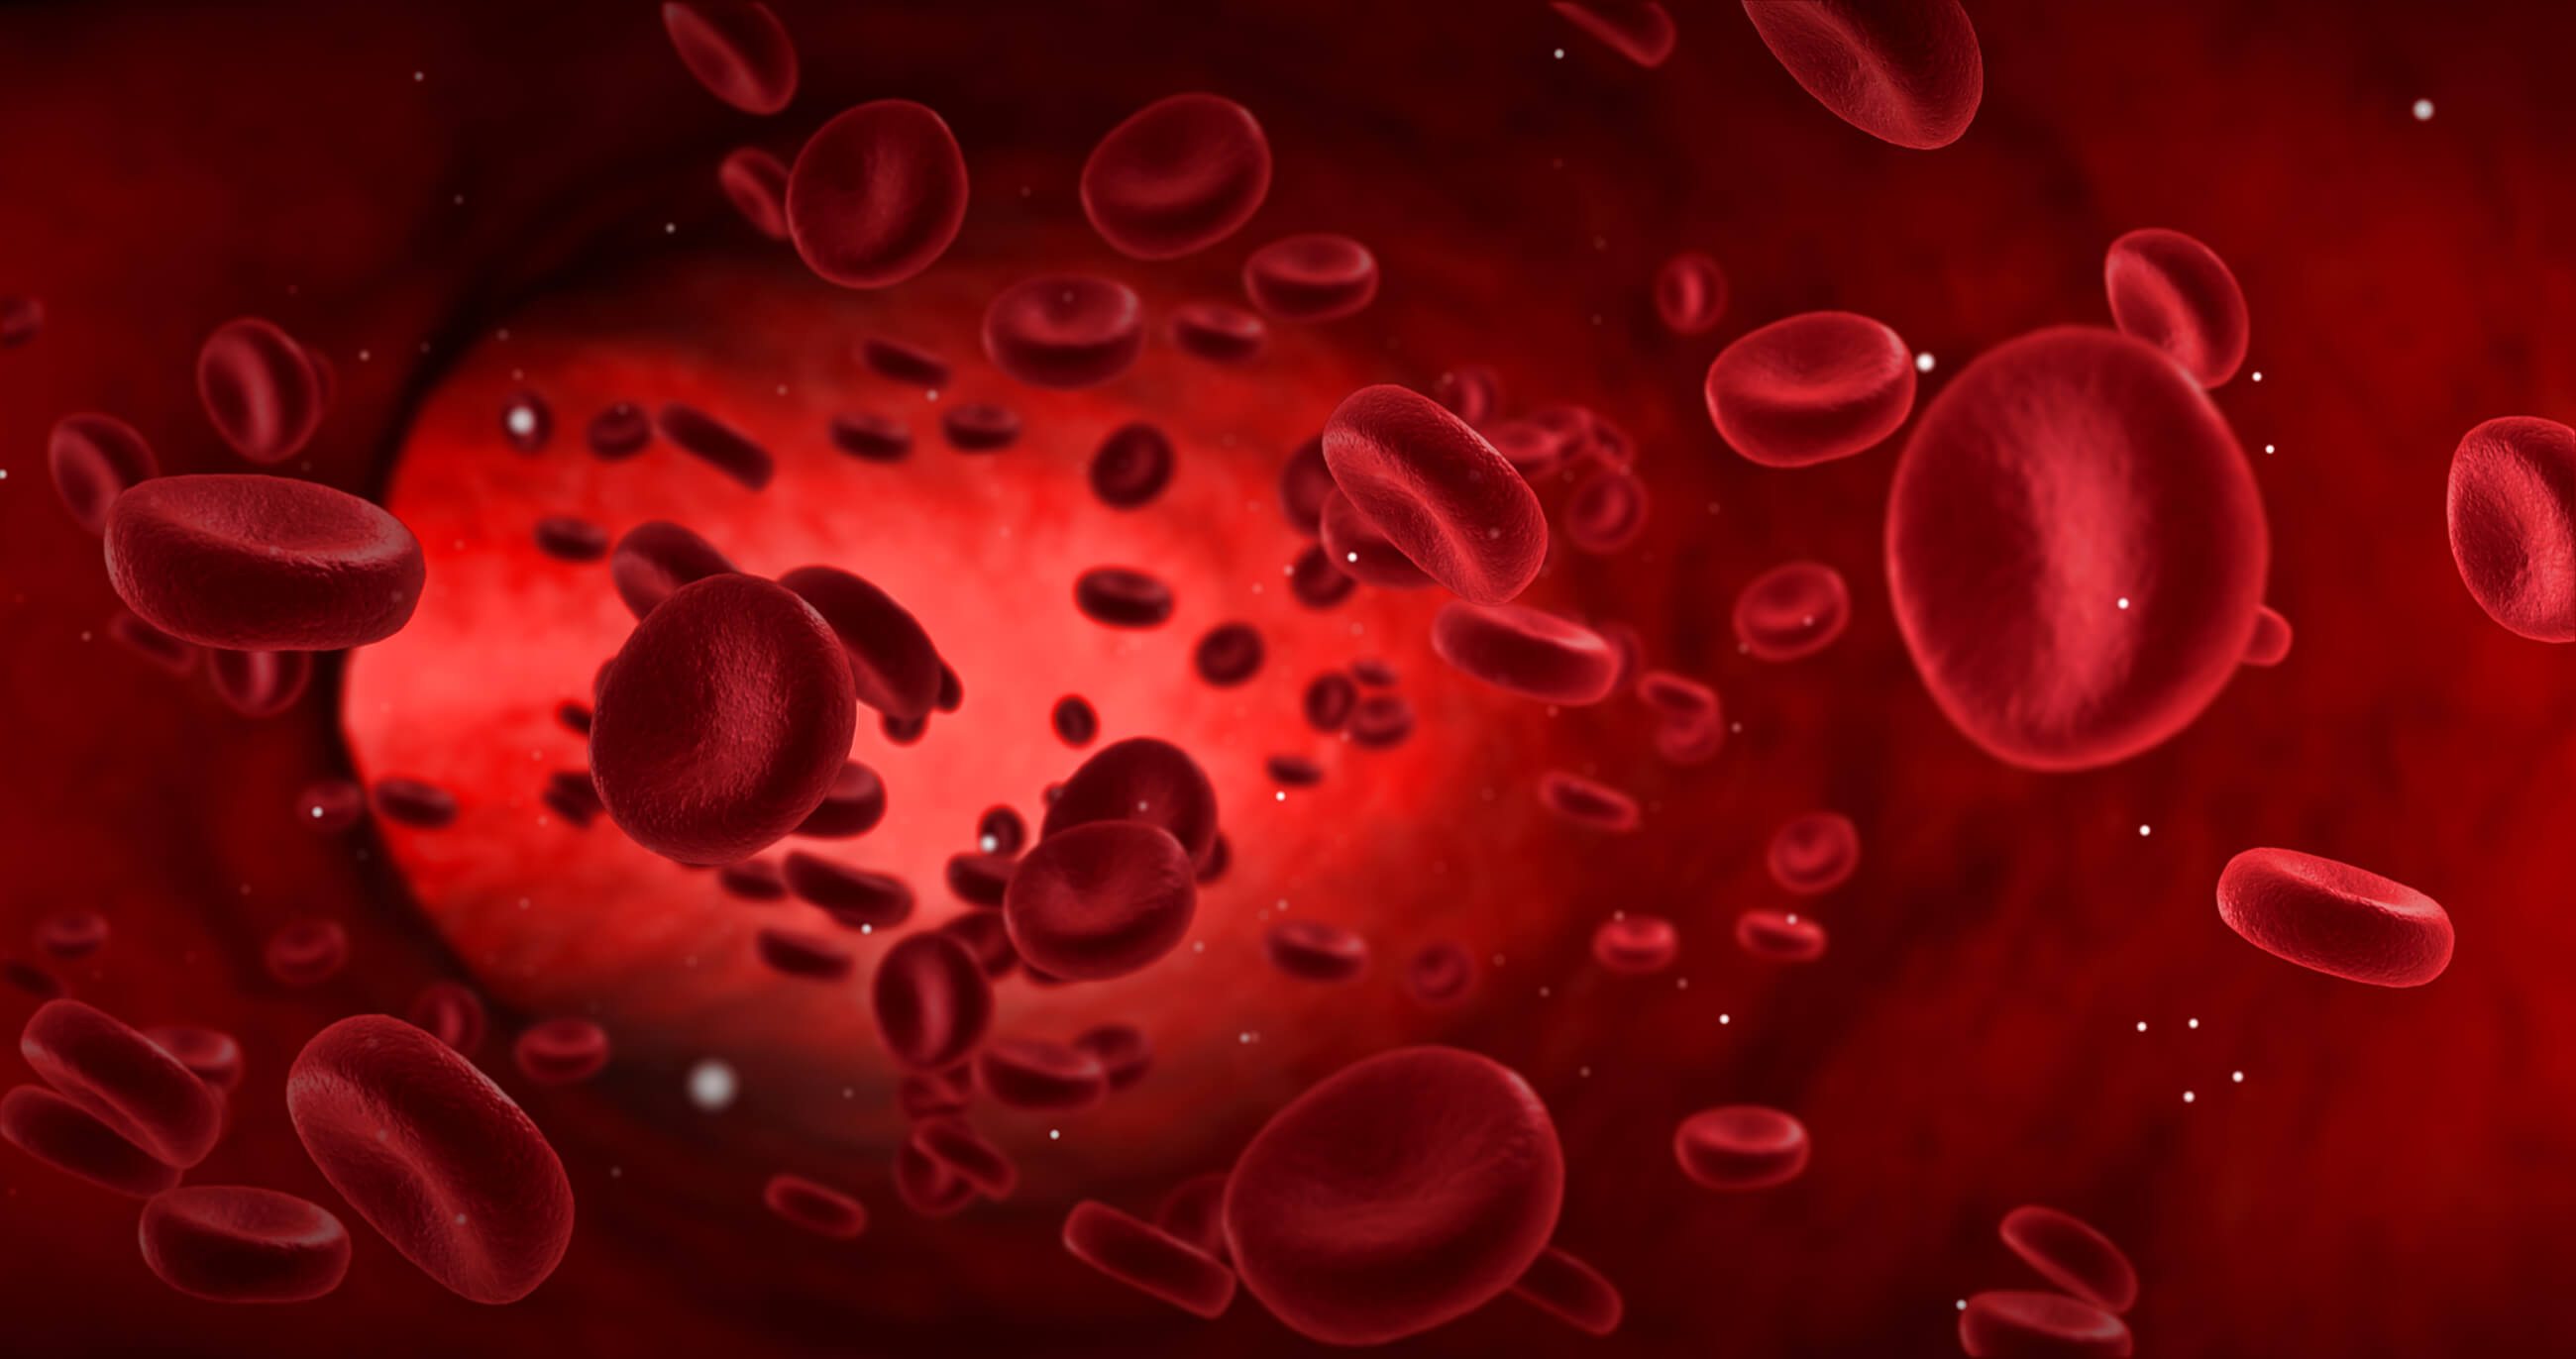 Red Blood Cell Alloimmunisation - Women's Health Fact Sheet